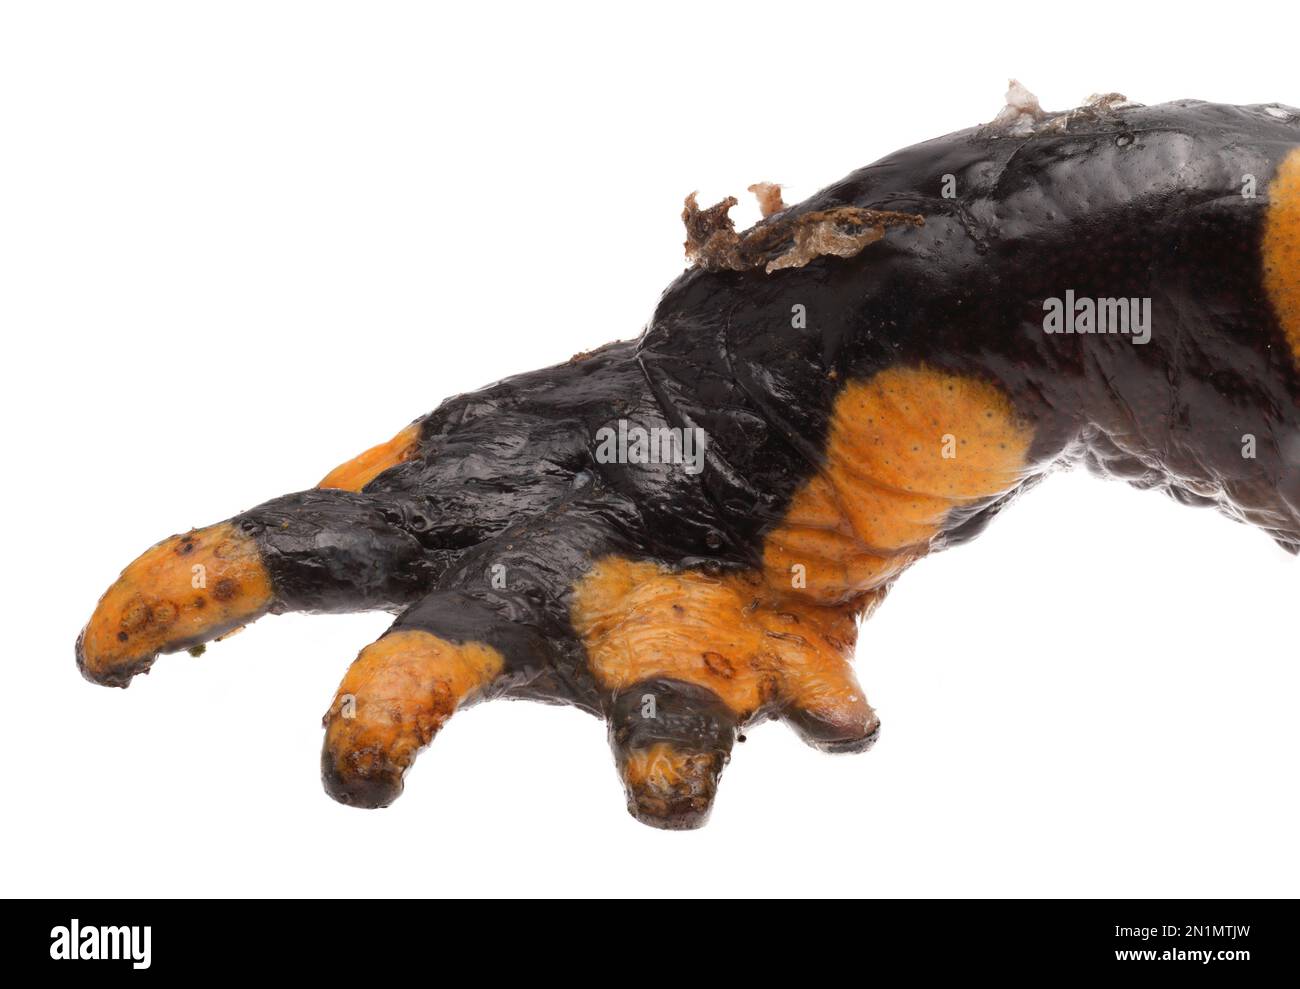 Hautläsionen und Nekrosen durch Chytridpilz Bsal (Batrachochytrium salamandrivorans) auf Feuersalamander (Salamandra salamander), Deutschland Stockfoto